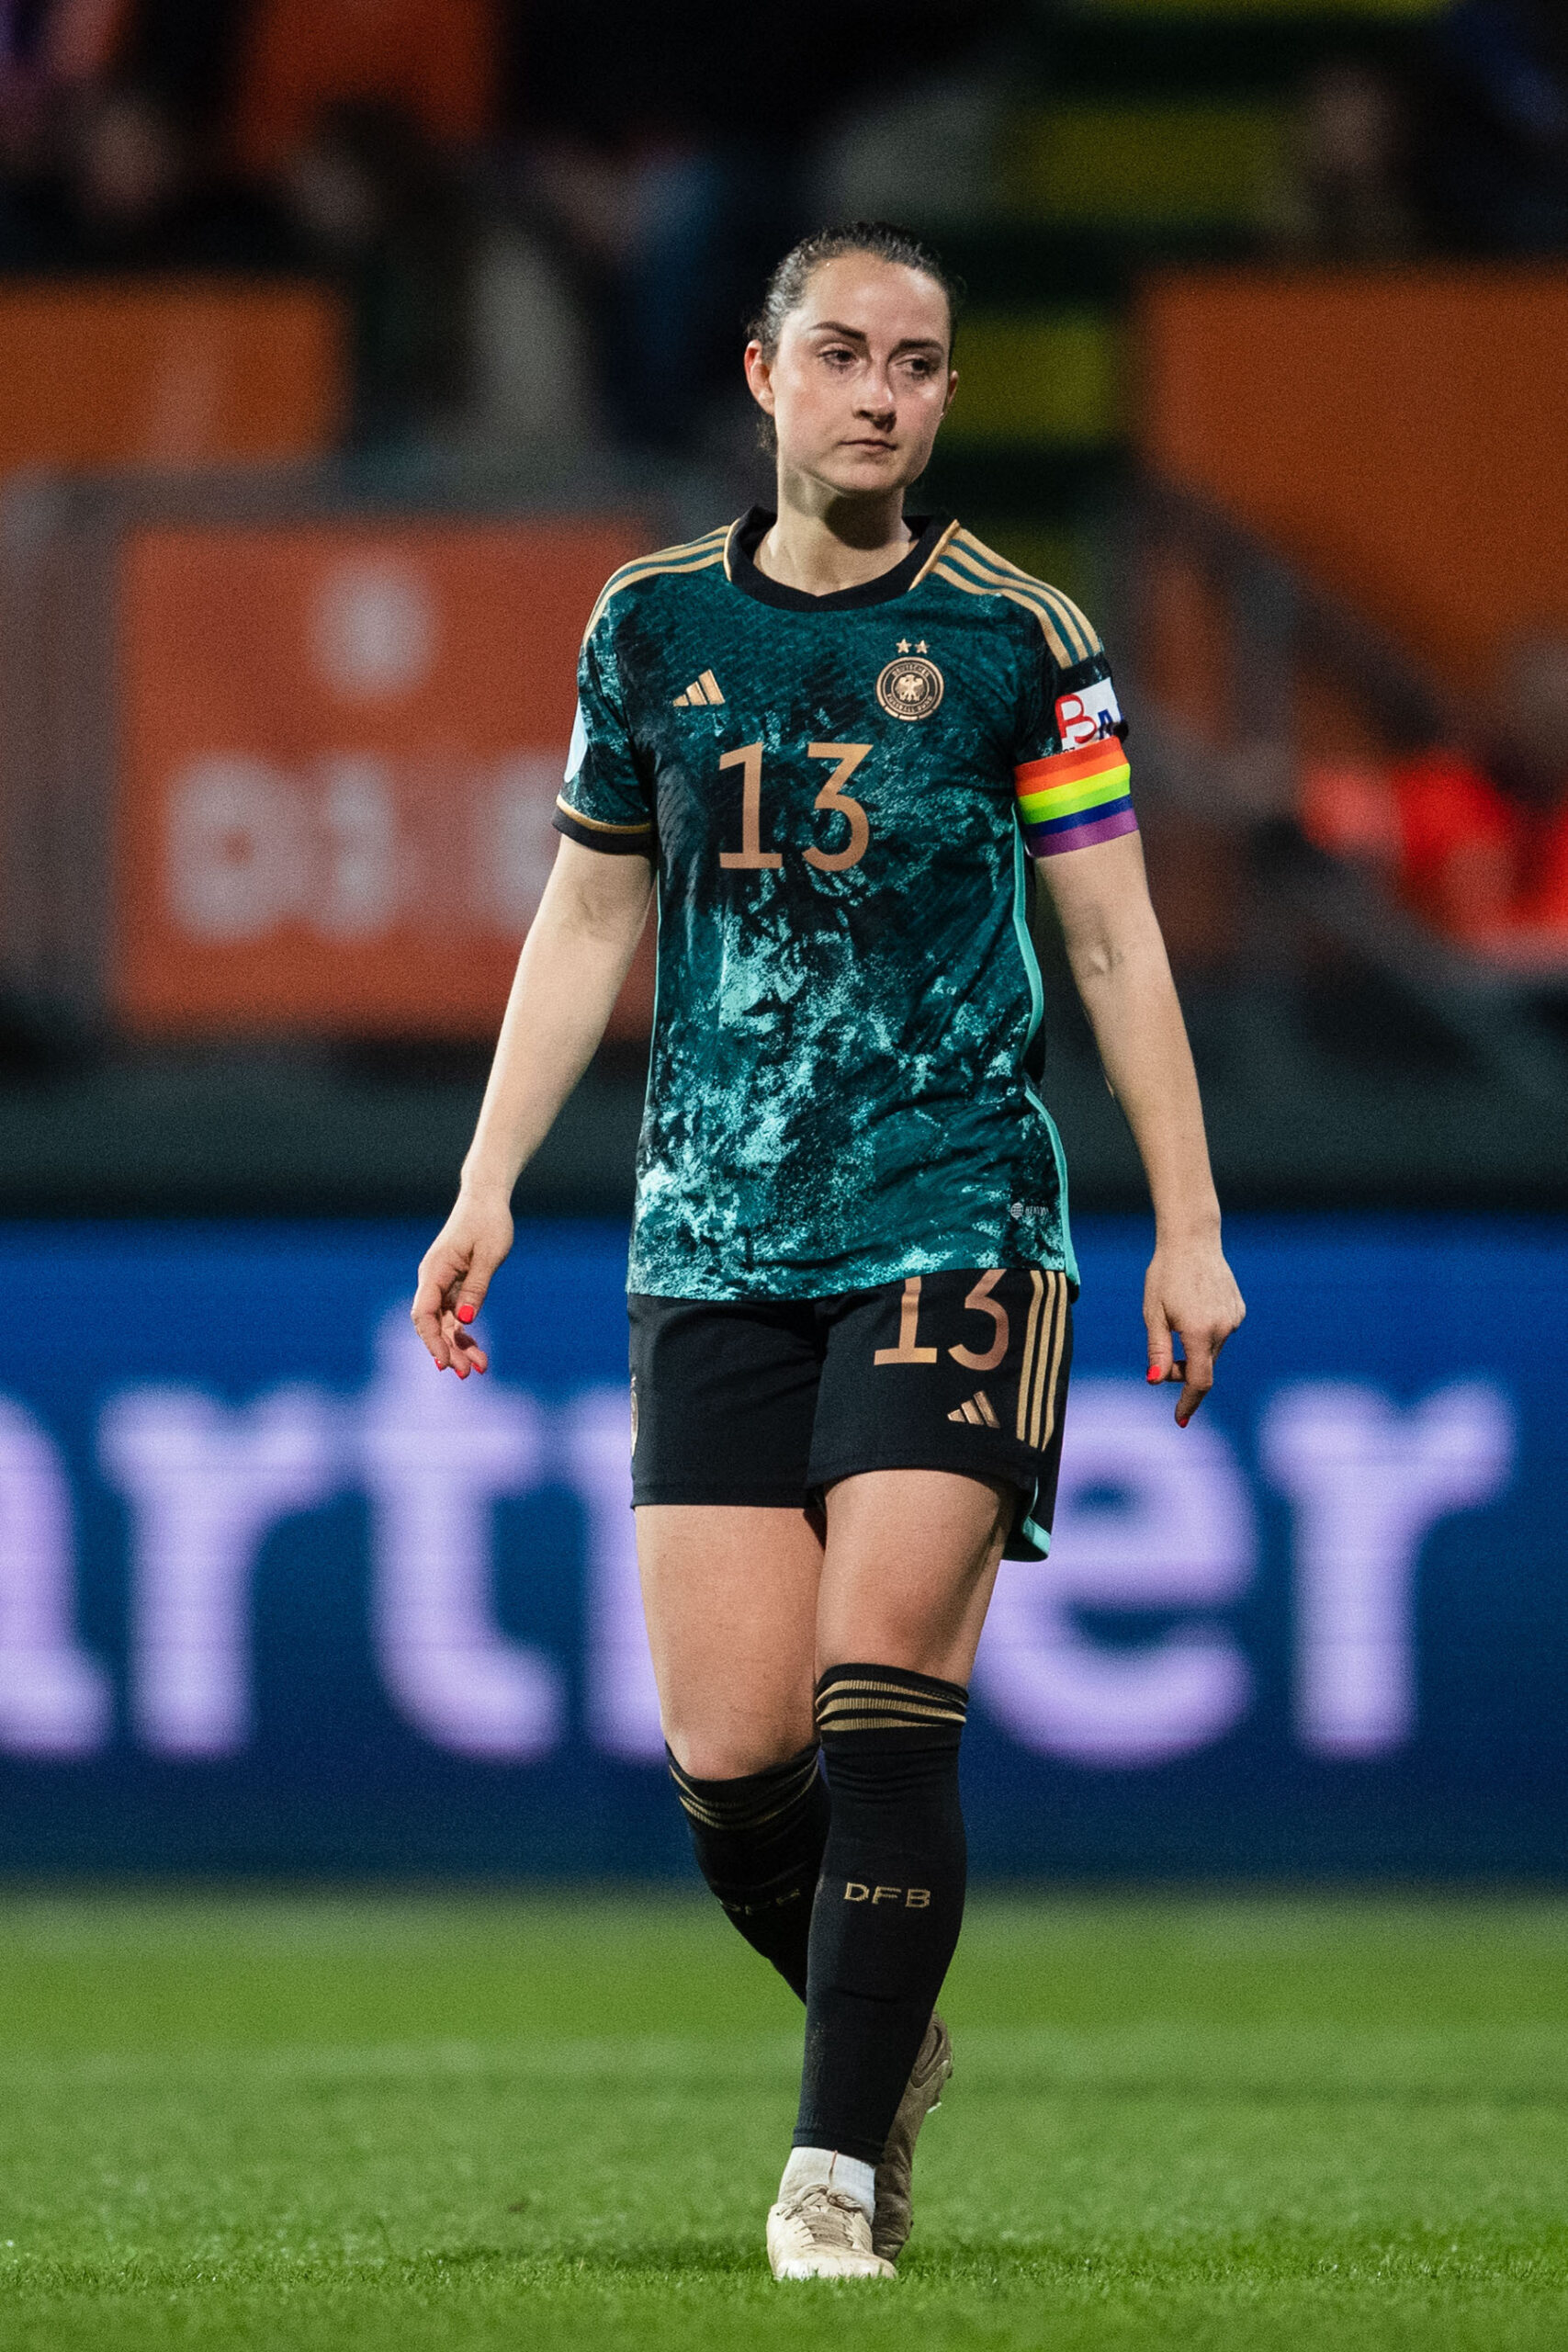 DFB-Spielerin Sara Däbritz auf dem Platz.